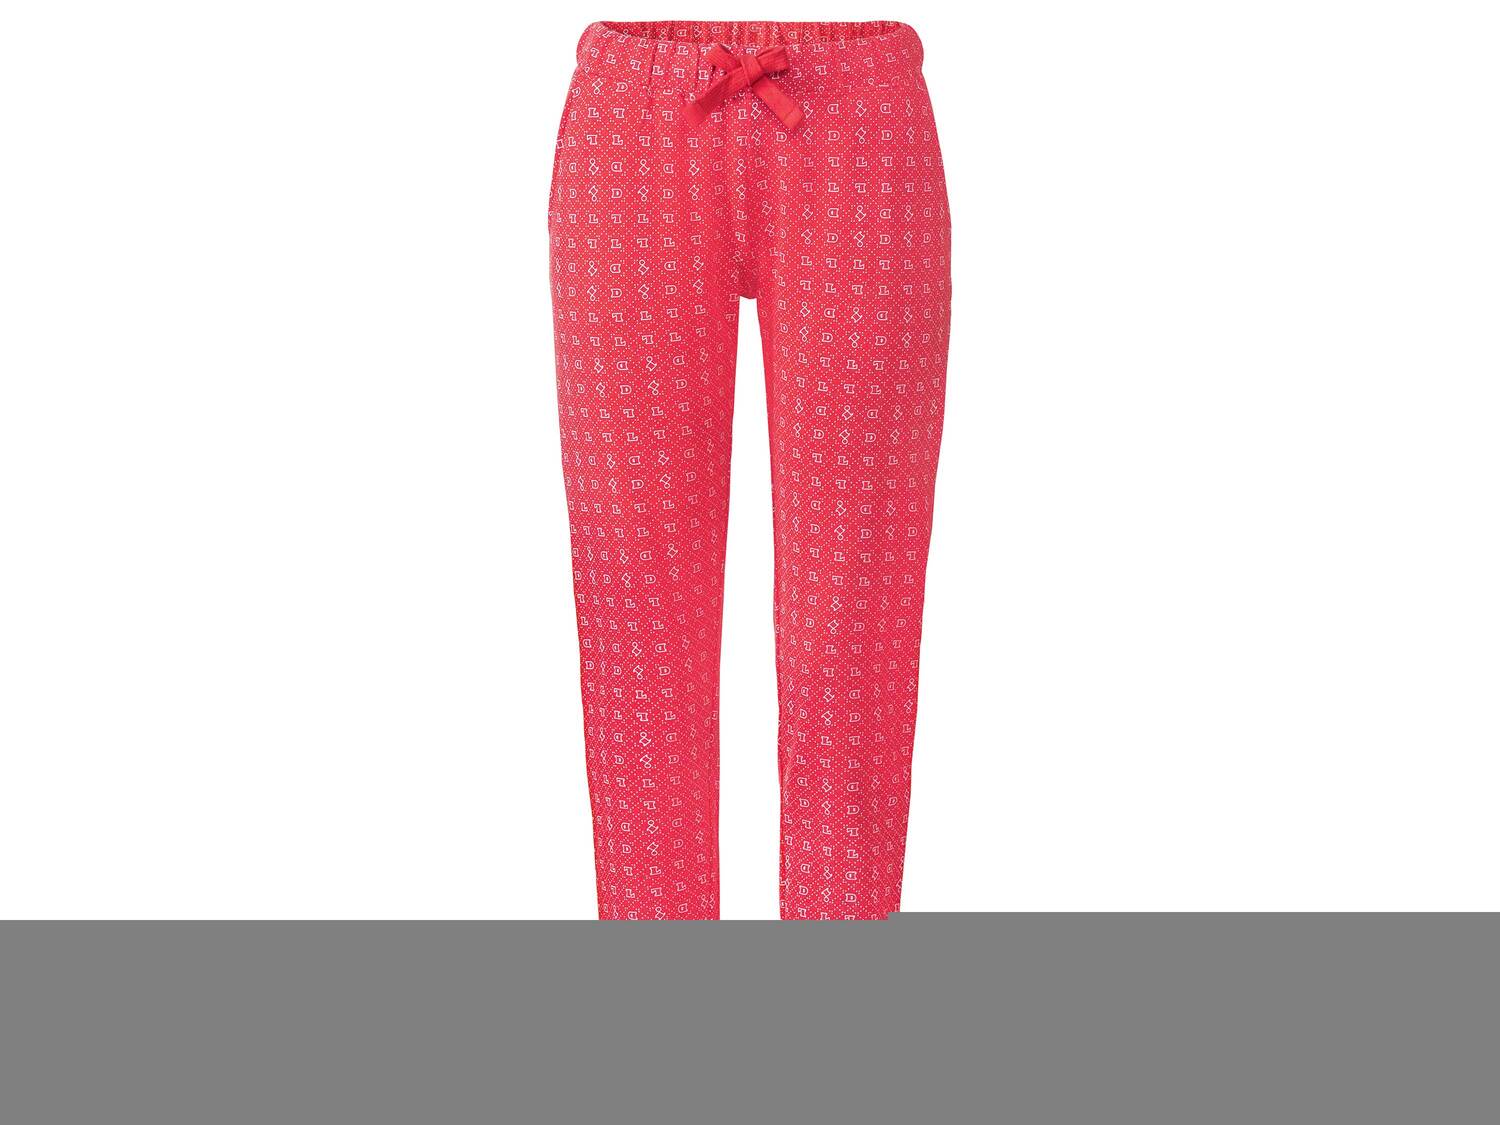 Pantalon molletonné Lidl , le prix 11.99 € 
- Du S au XL selon modèle
- Ex. ...